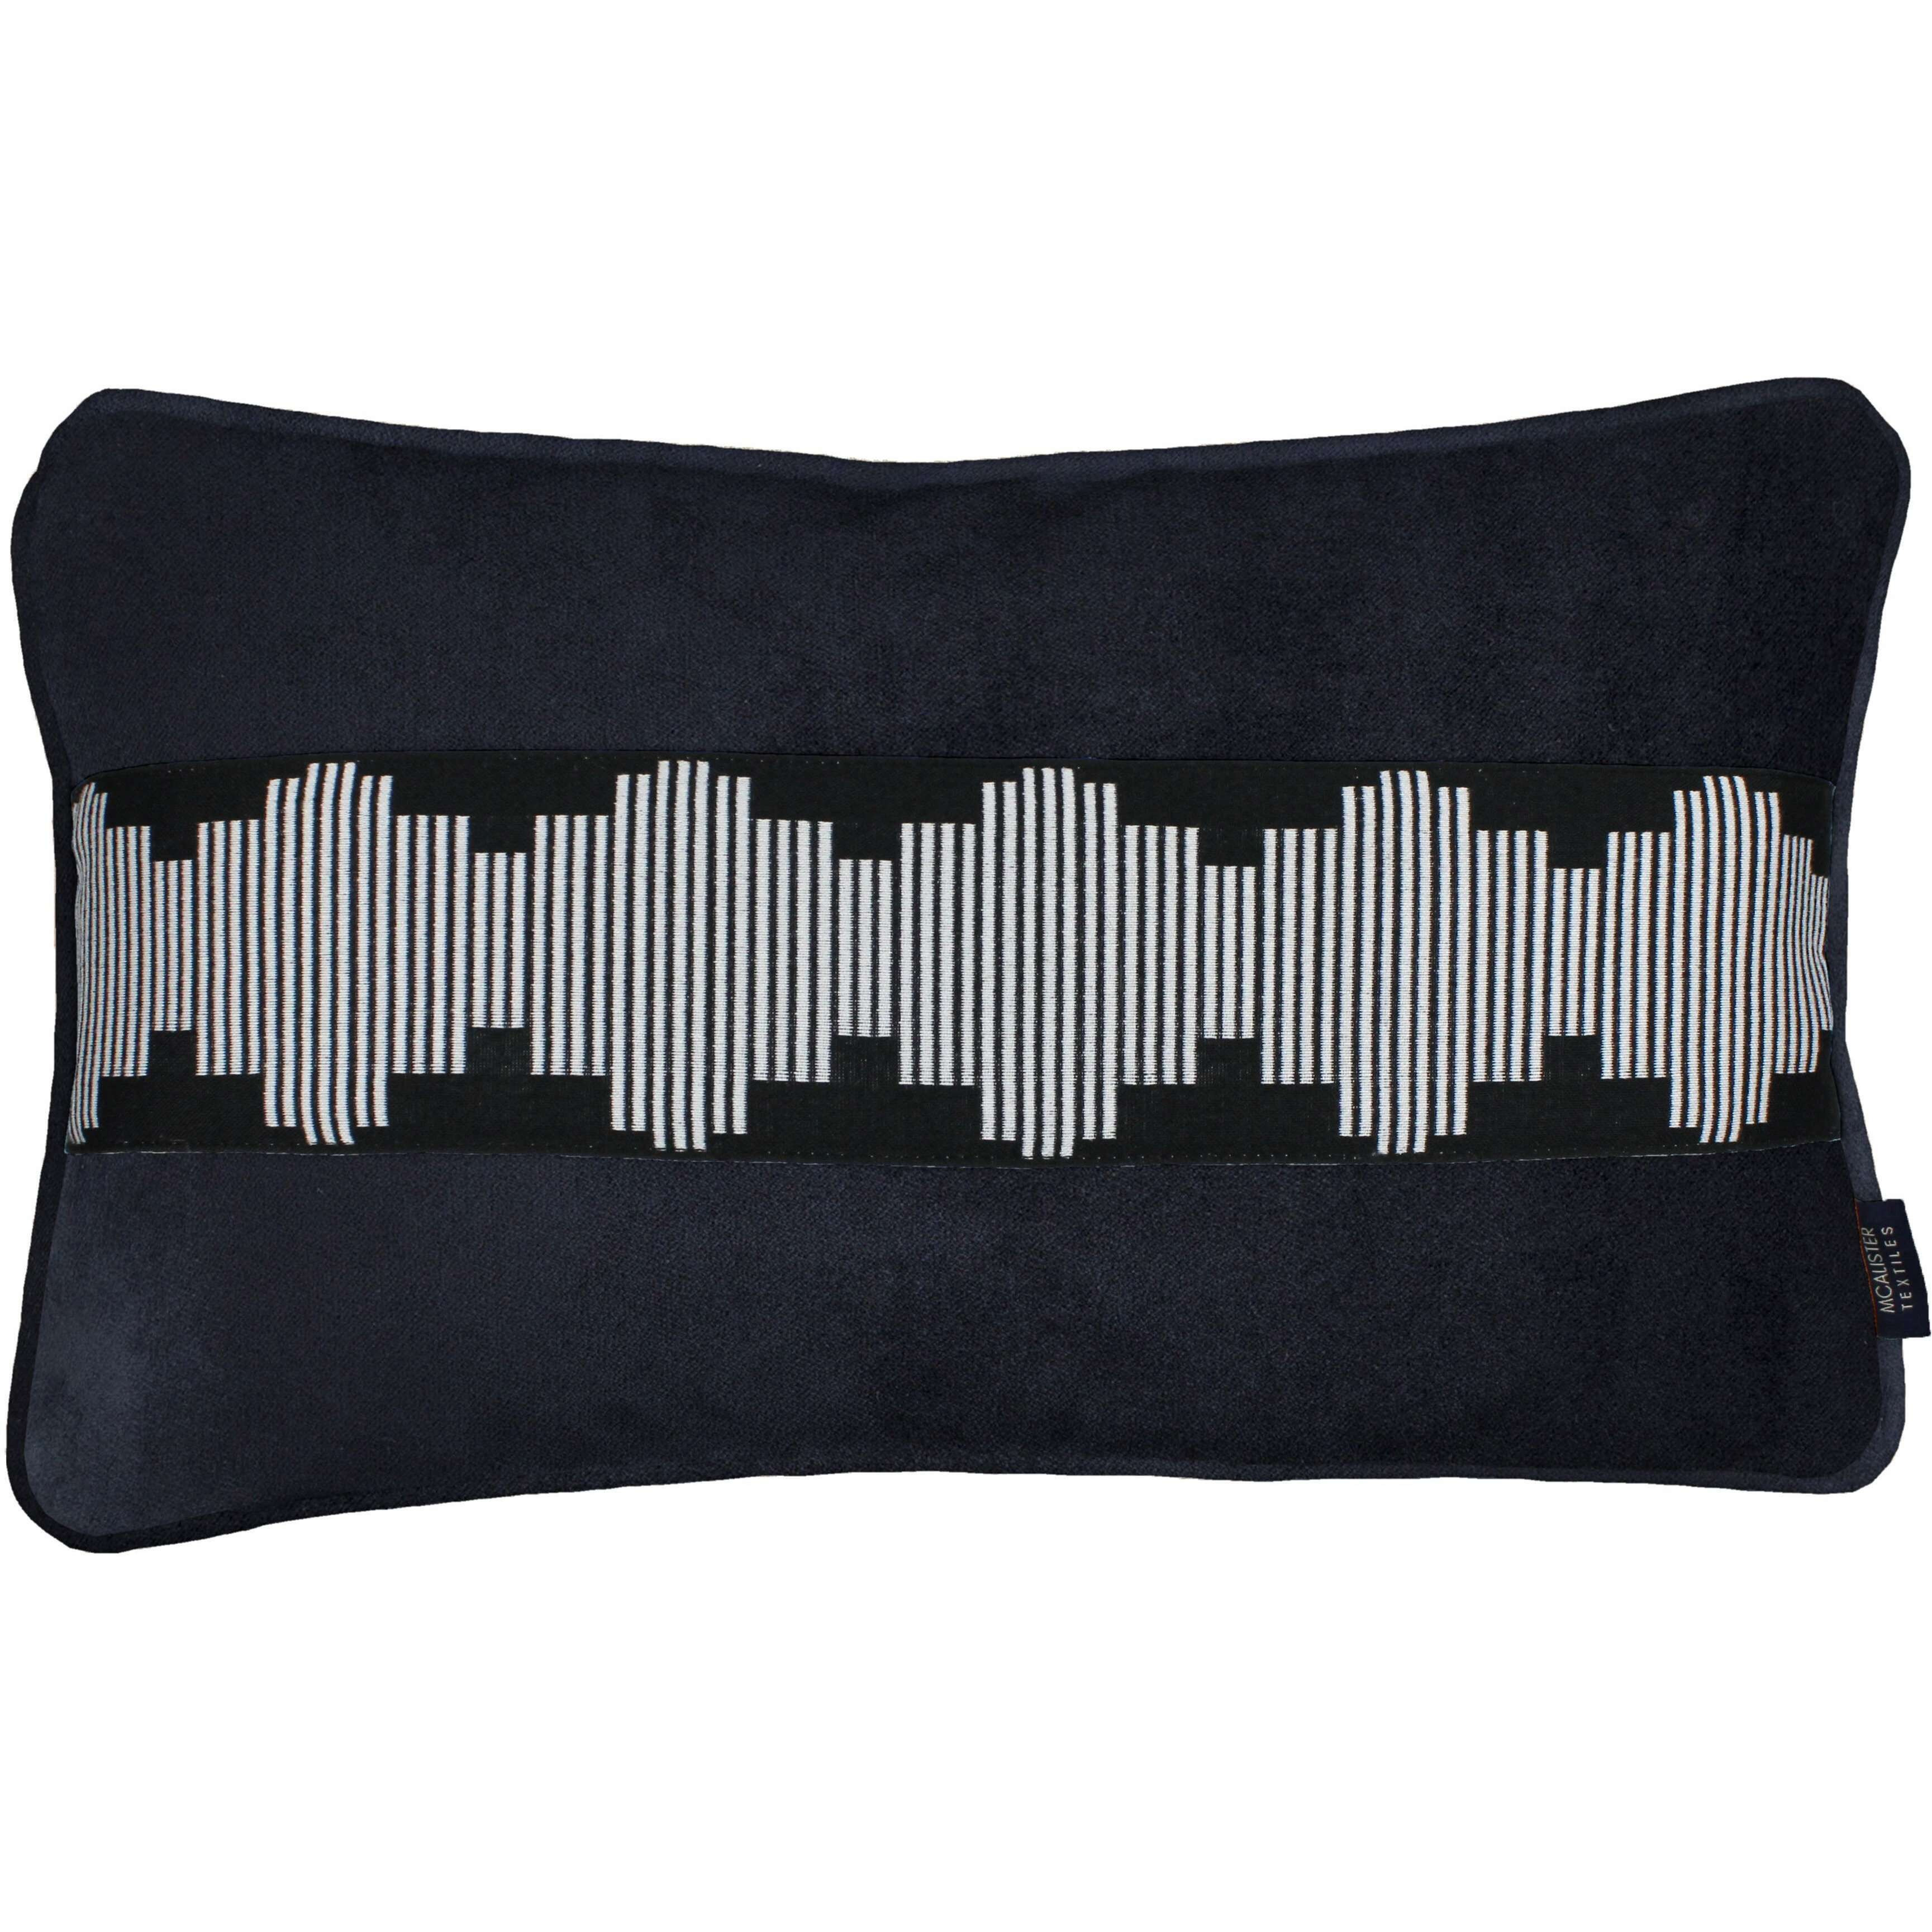 Maya Striped Black Velvet Pillow, Cover Only / 50cm x 30cm